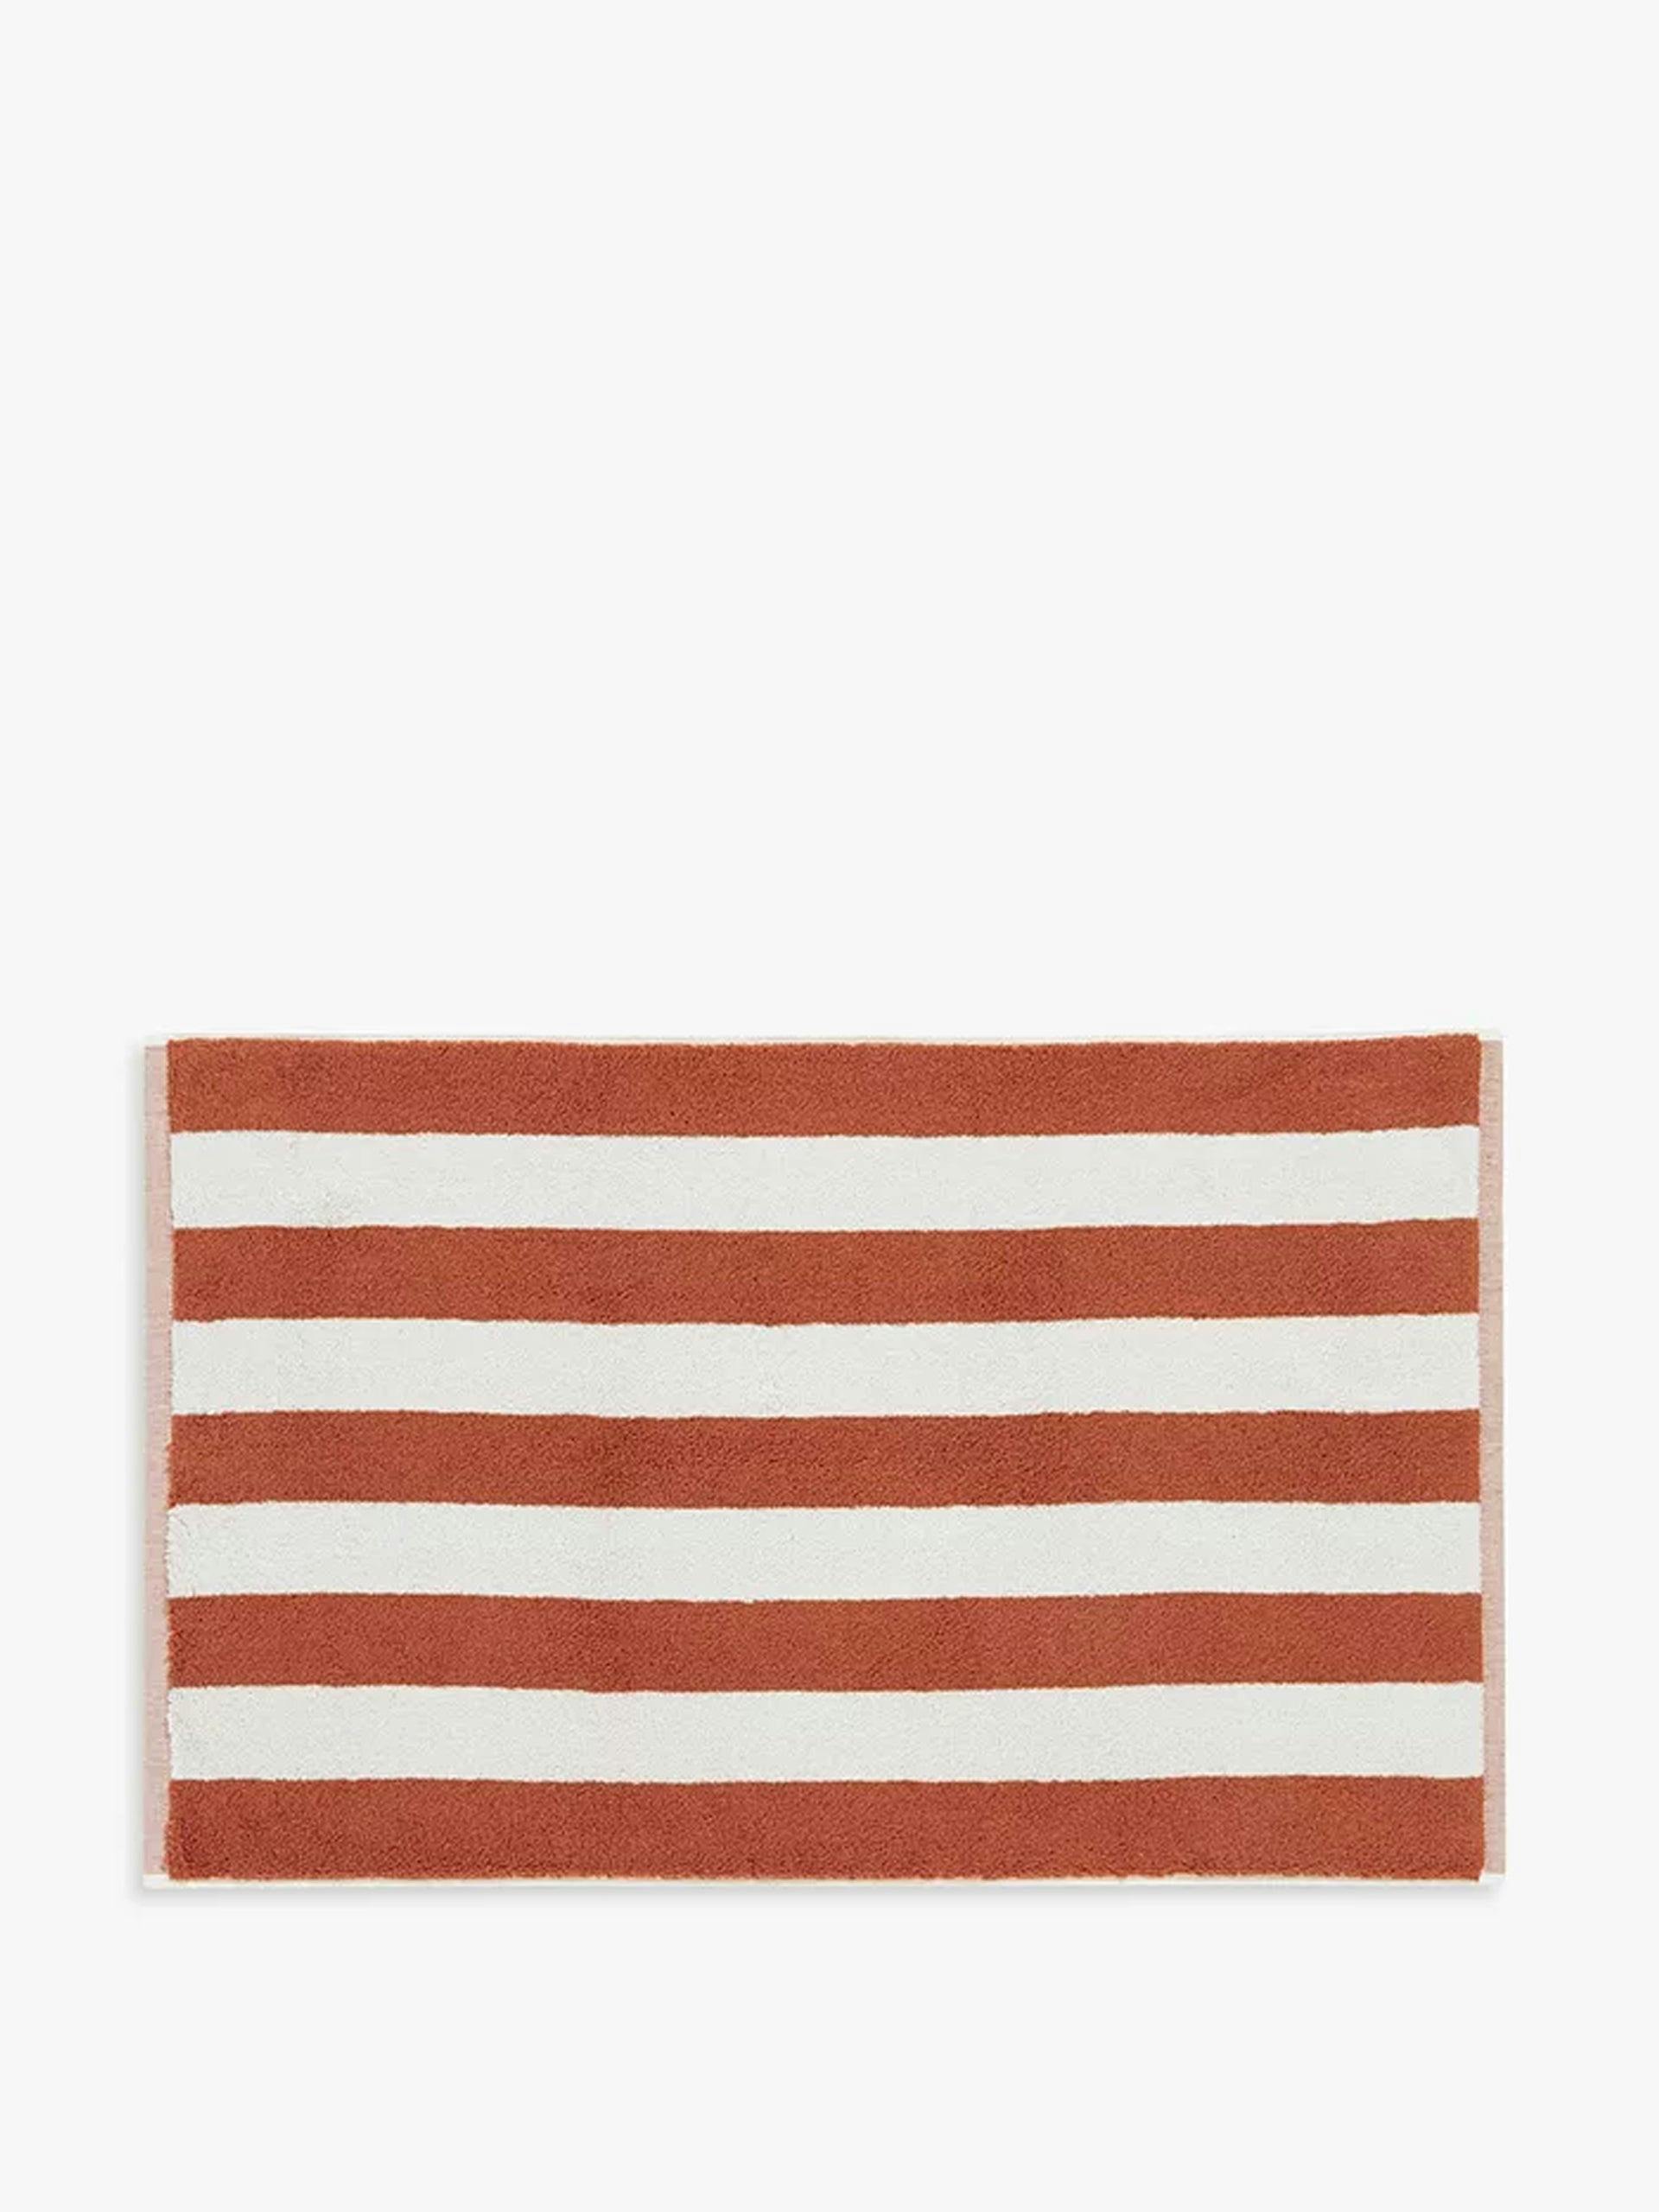 Brown striped bath mat